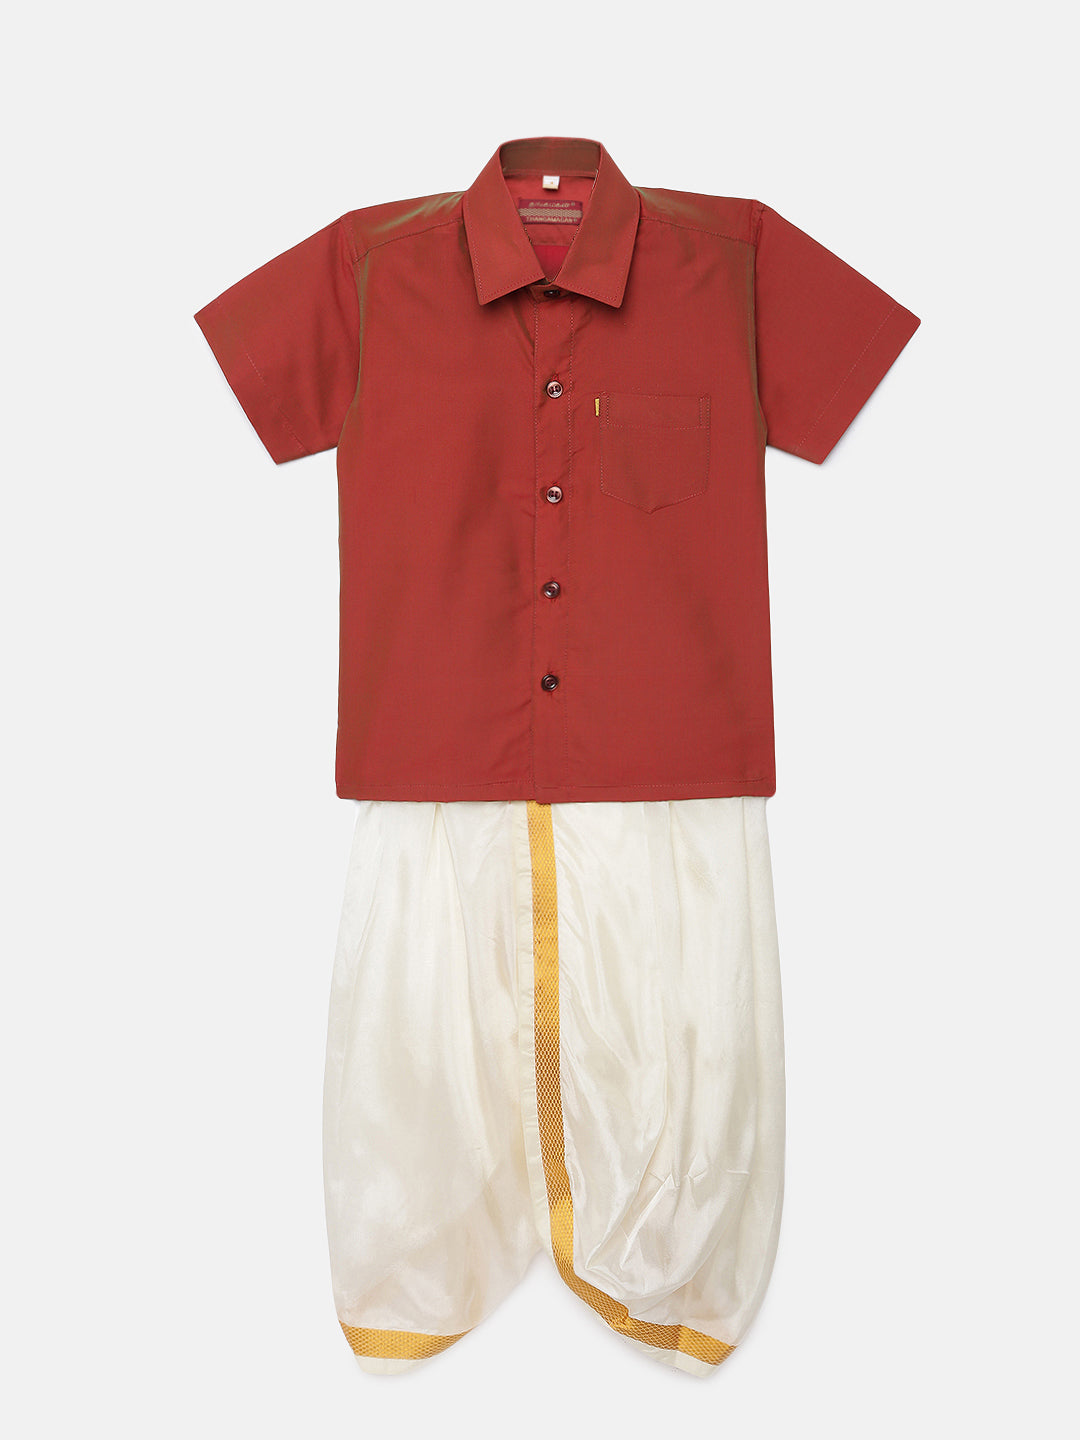 38. Boys Panjagajam & Shirt Set